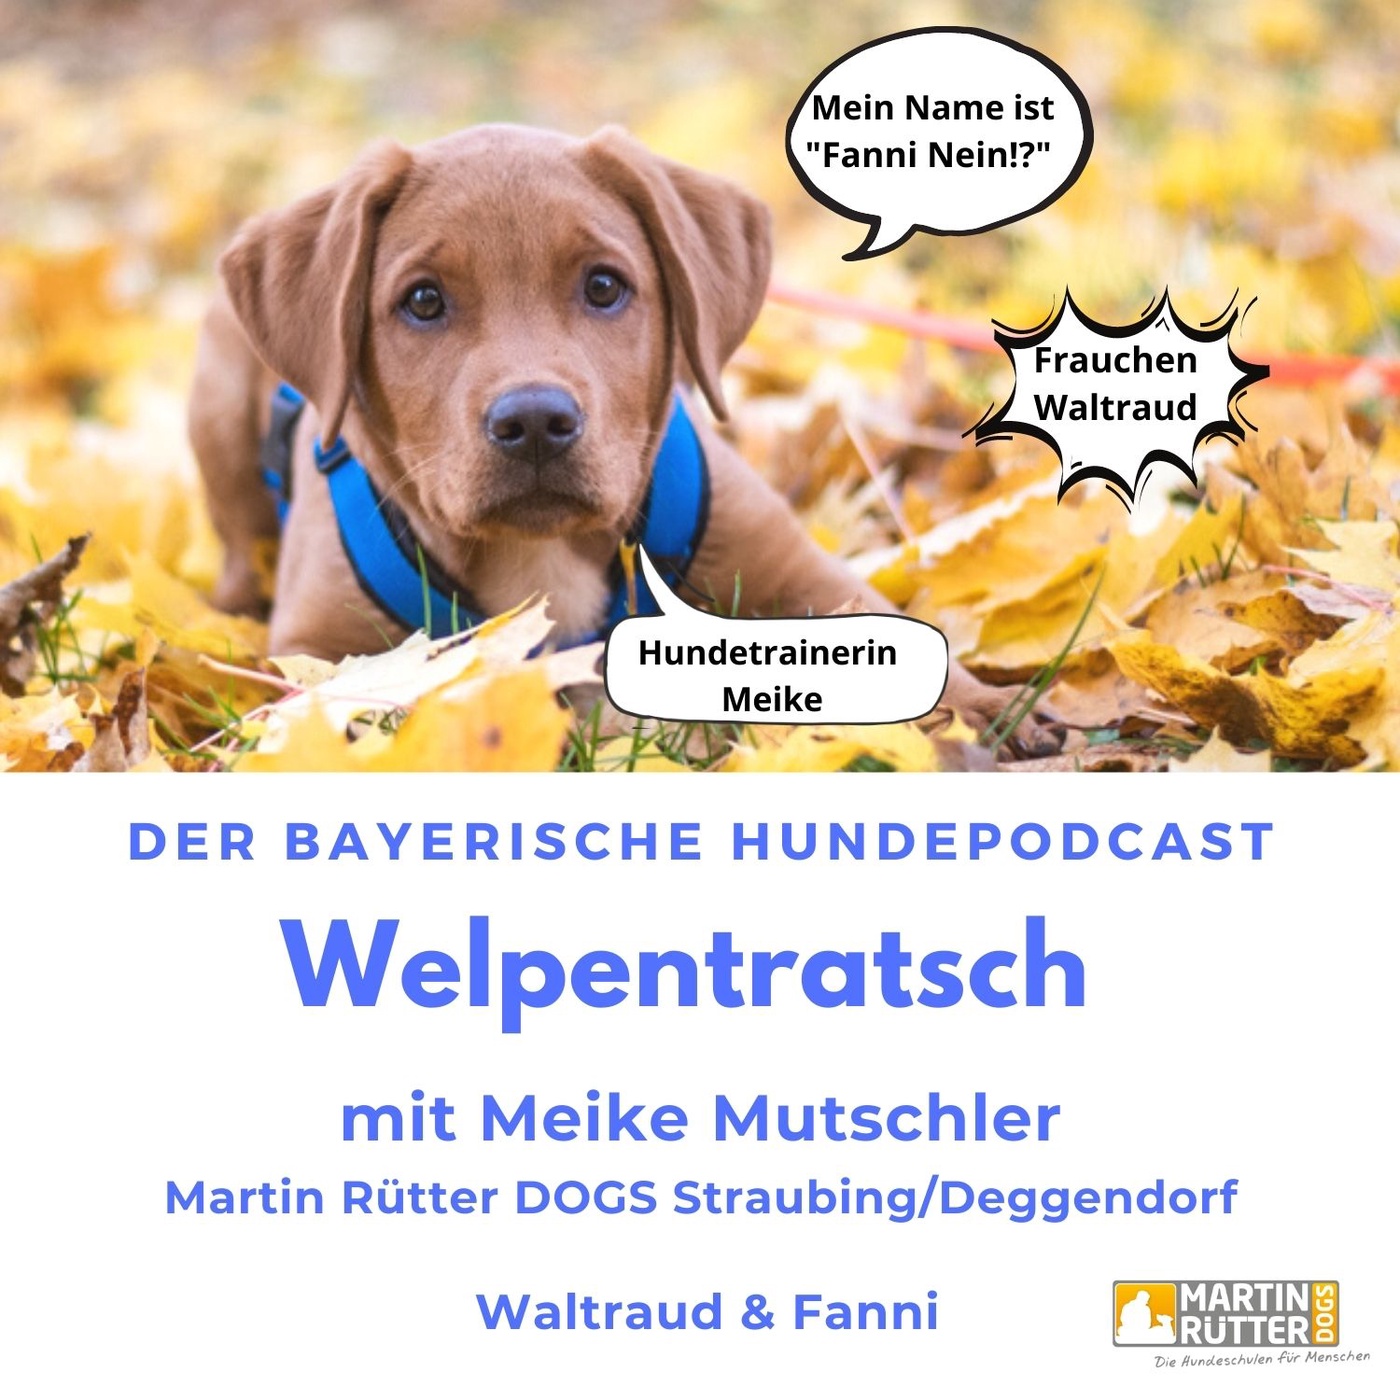 Welpentratsch - Der bayerische Hundepodcast